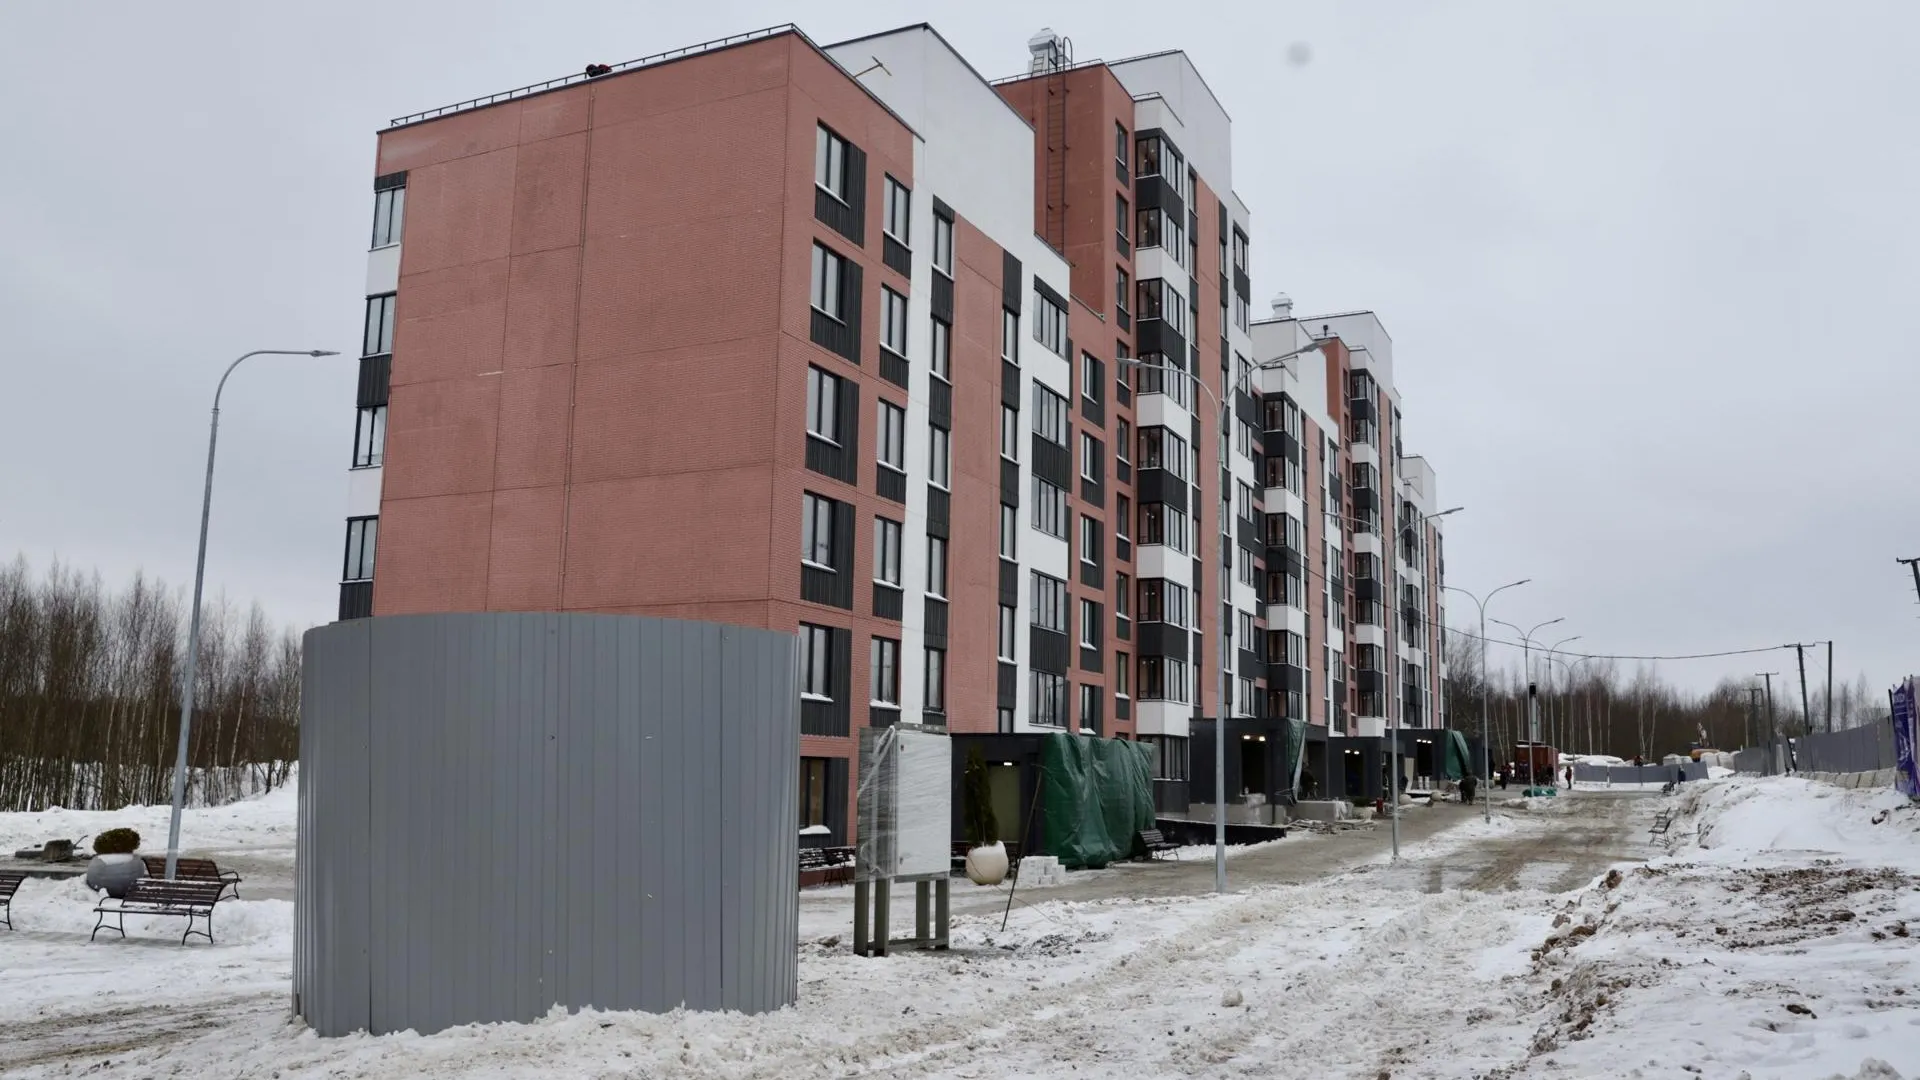 Переселенцам из аварийных домов в Солнечногорске показали новые квартиры в микрорайоне Рекинцо-2